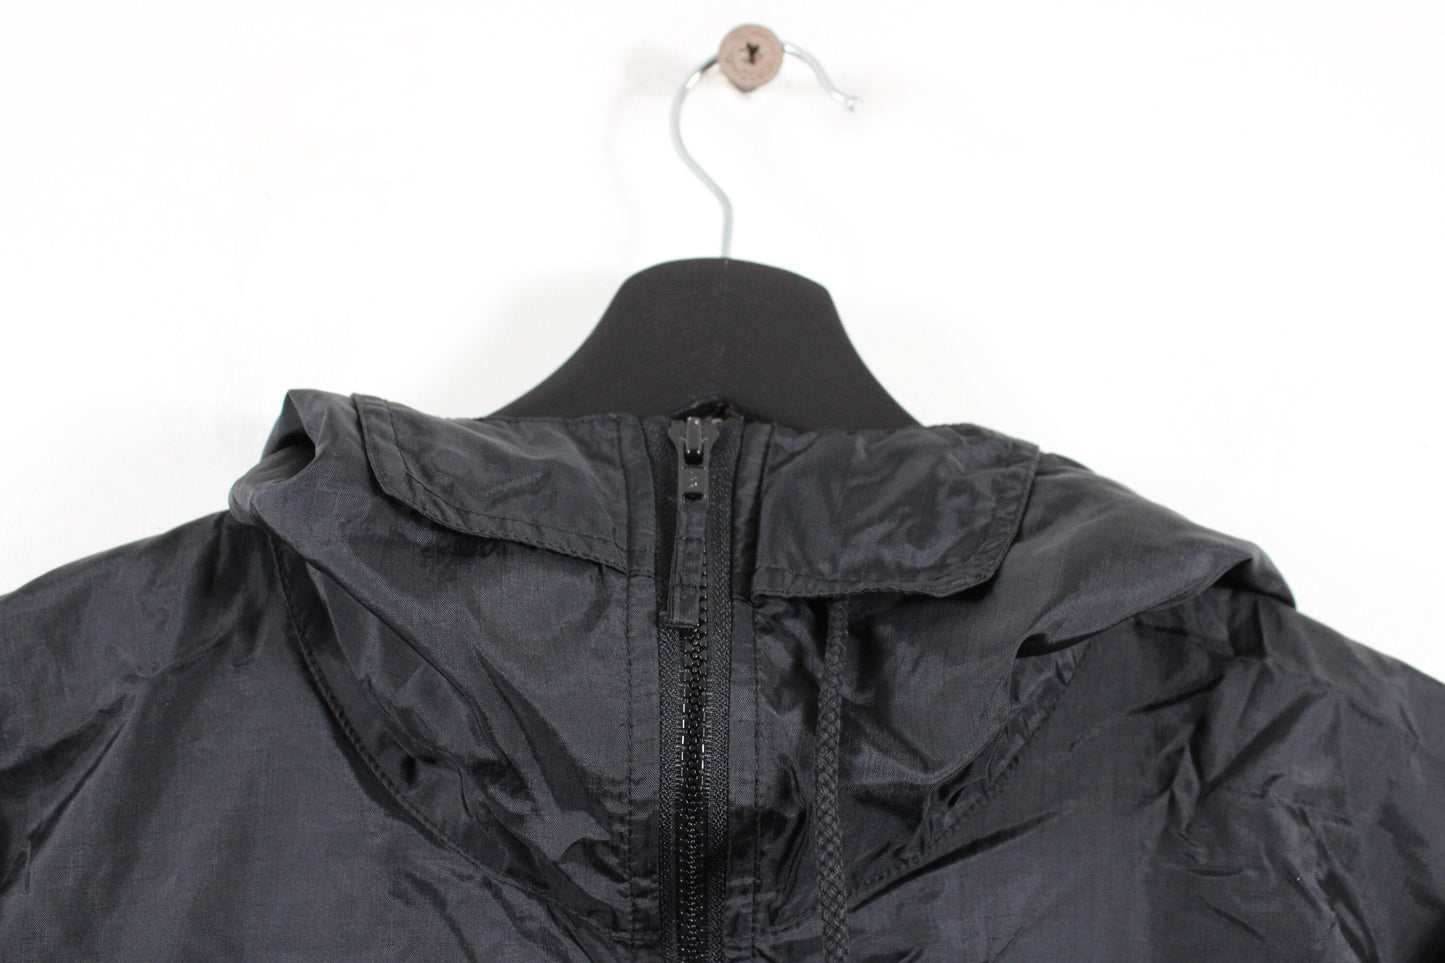 Brooks Ski-Jacket / 90s Vintage Neon Windbreaker Anorak Coat / Hip-Hop Clothing / Streetwear